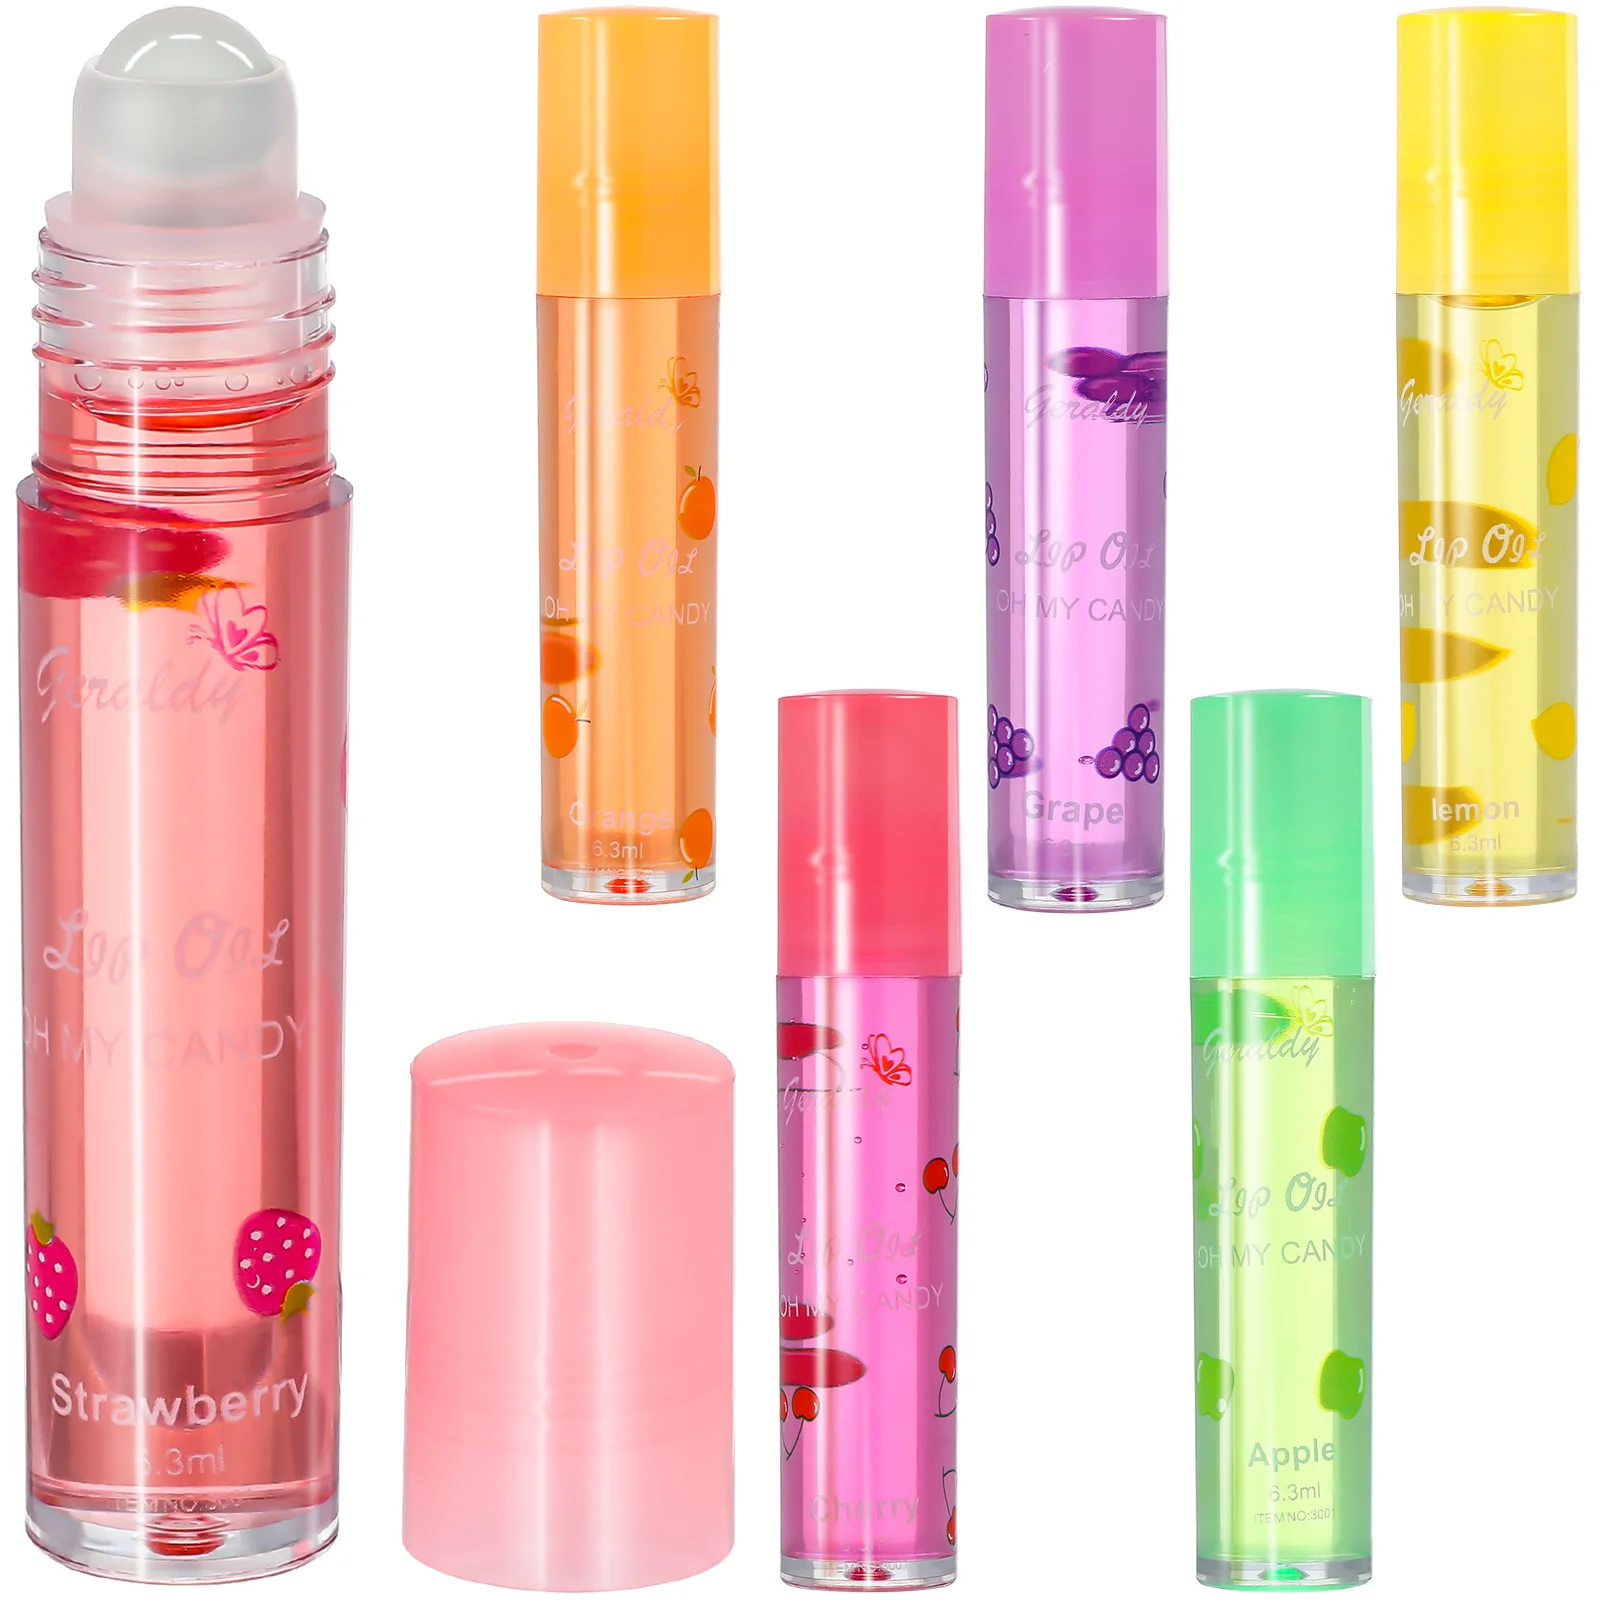 

6Pcs Lip Gloss Fruit Flavor Lipsticks Transparent Lip Plumper Lip Enhancer for Fuller Hydrated Lips